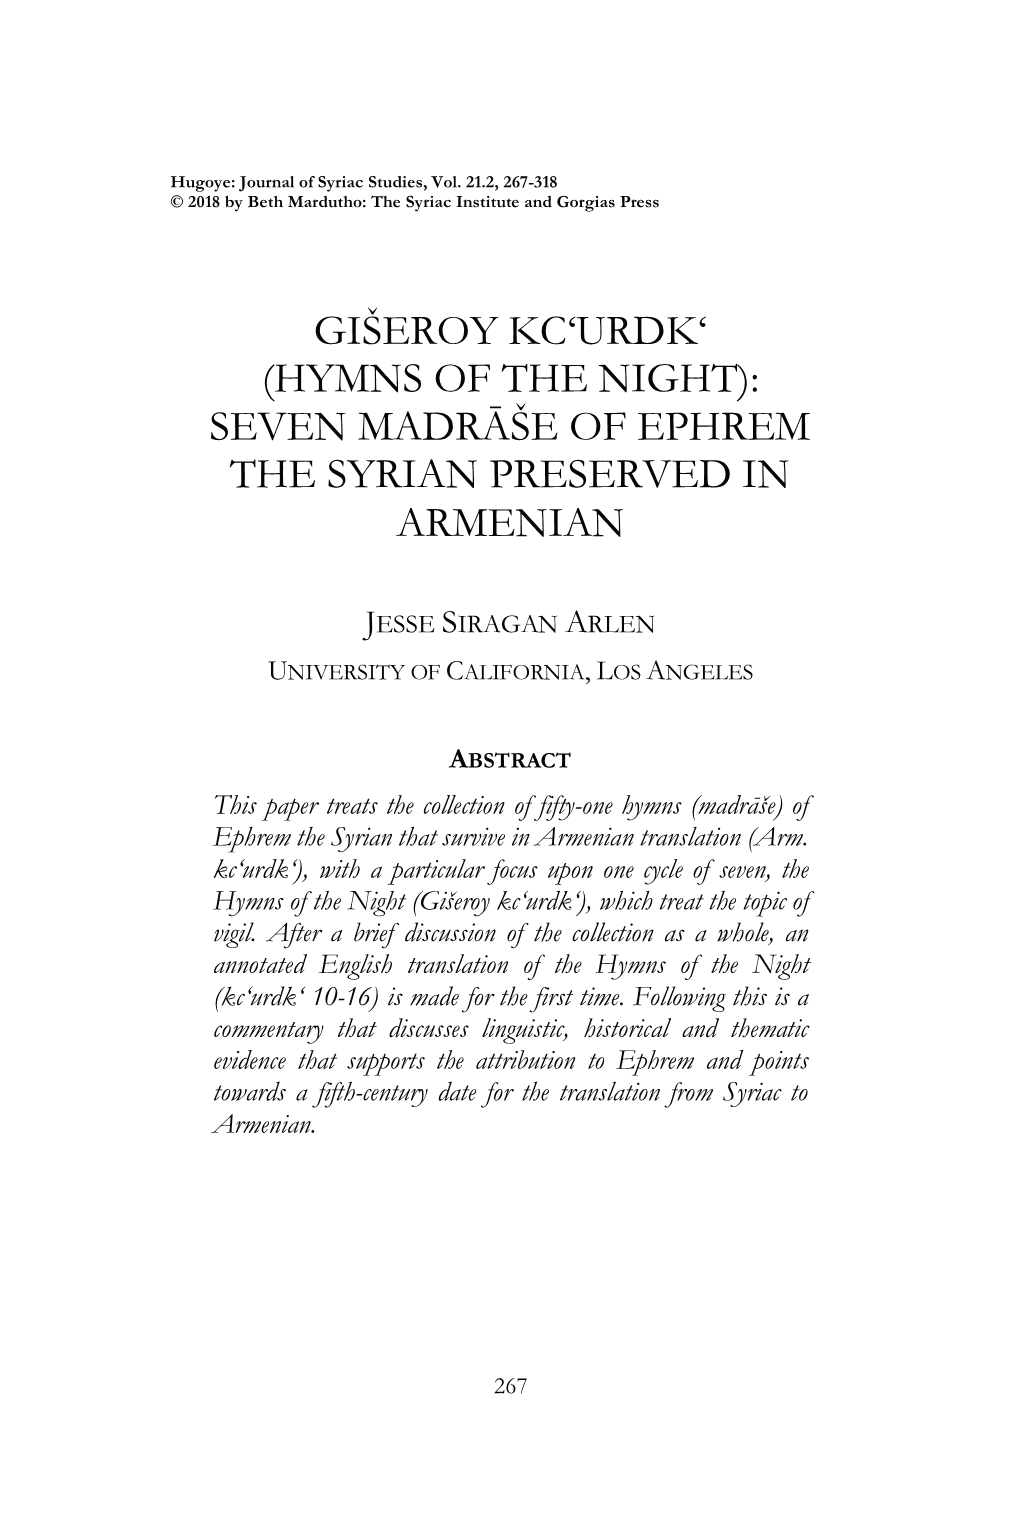 Seven Madrāše of Ephrem the Syrian Preserved